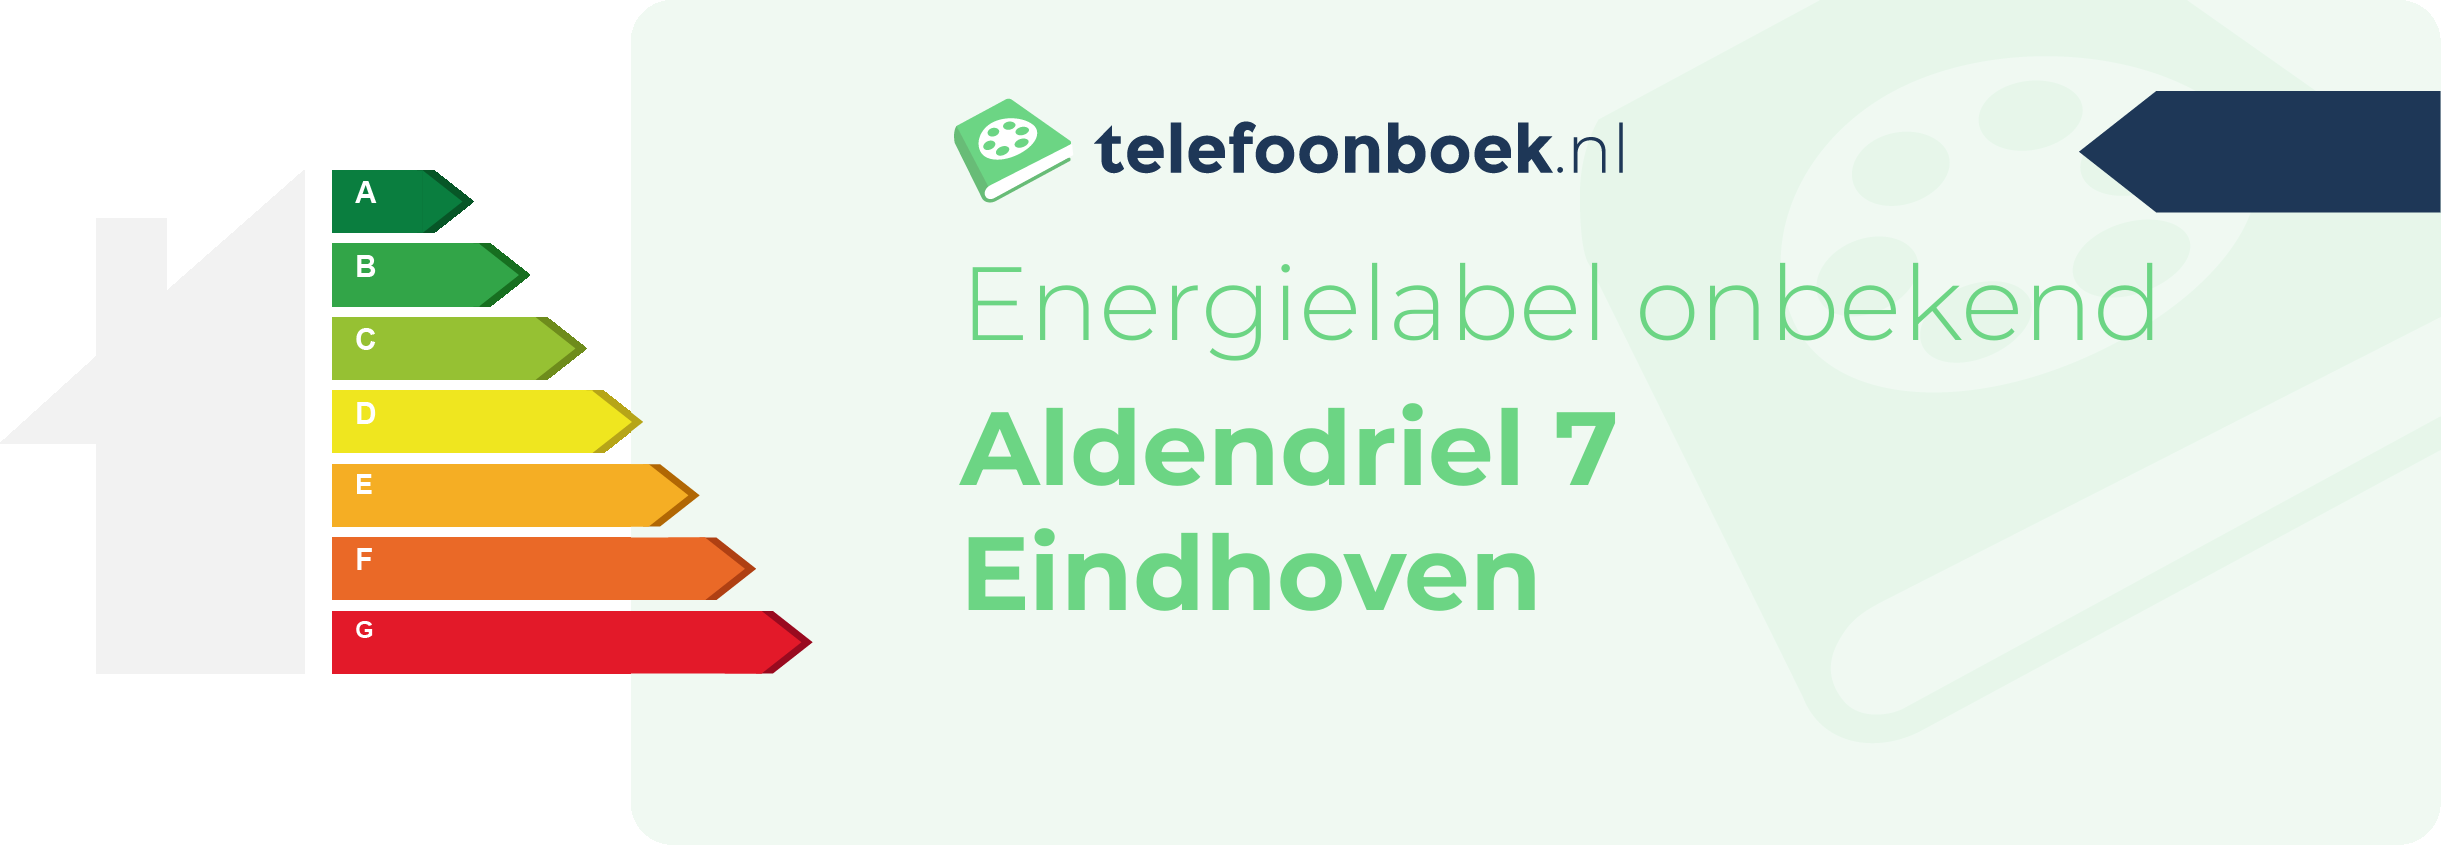 Energielabel Aldendriel 7 Eindhoven